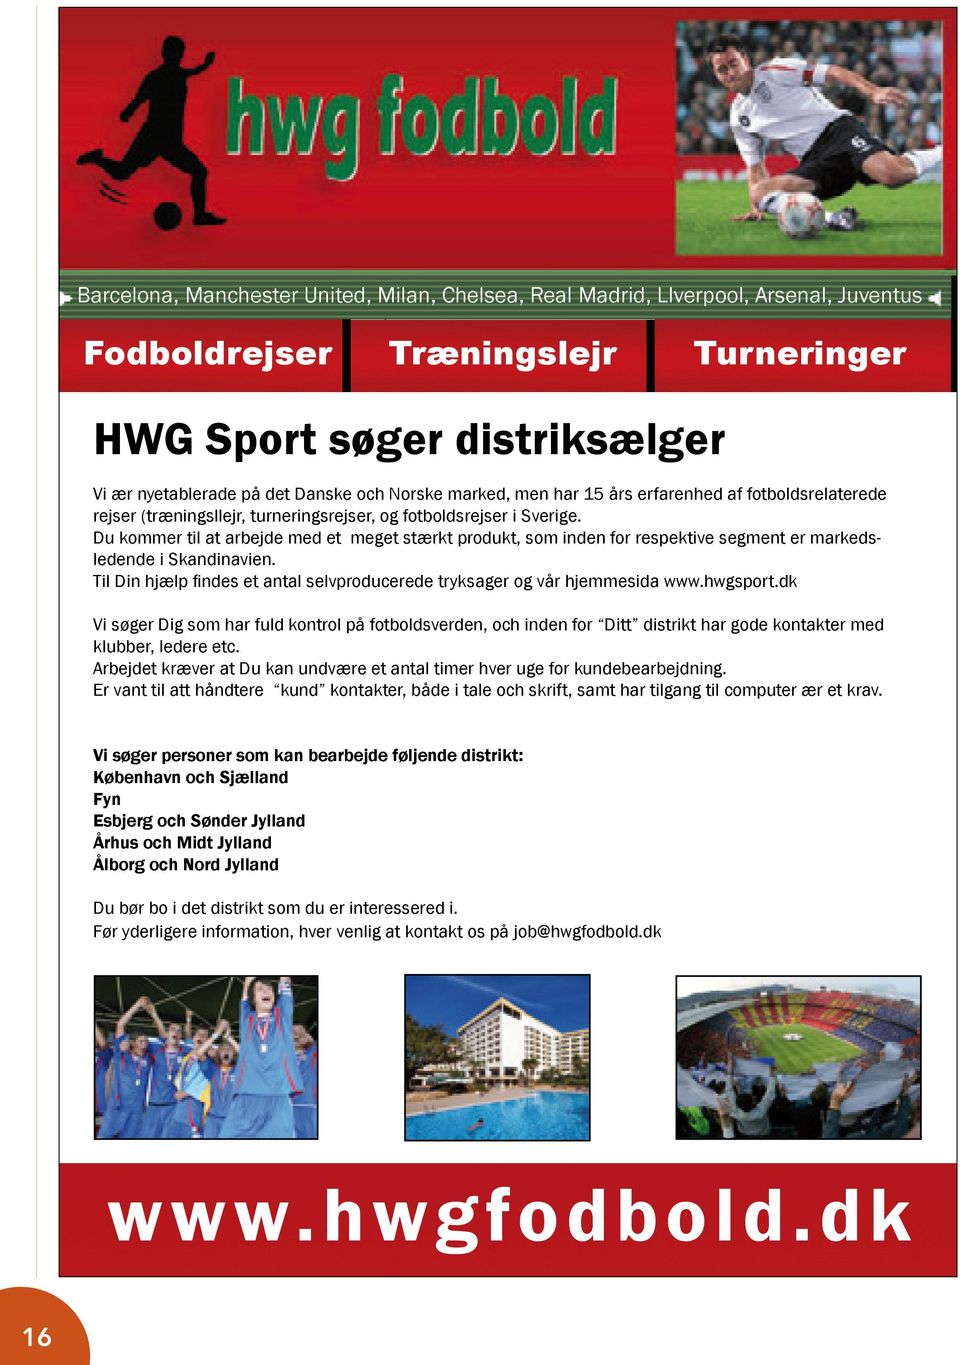 Norske marked, men har 15 års erfarenhed af fotboldsrelaterede rejser (træningsllejr, turneringsrejser, og fotboldsrejser i Sverige.